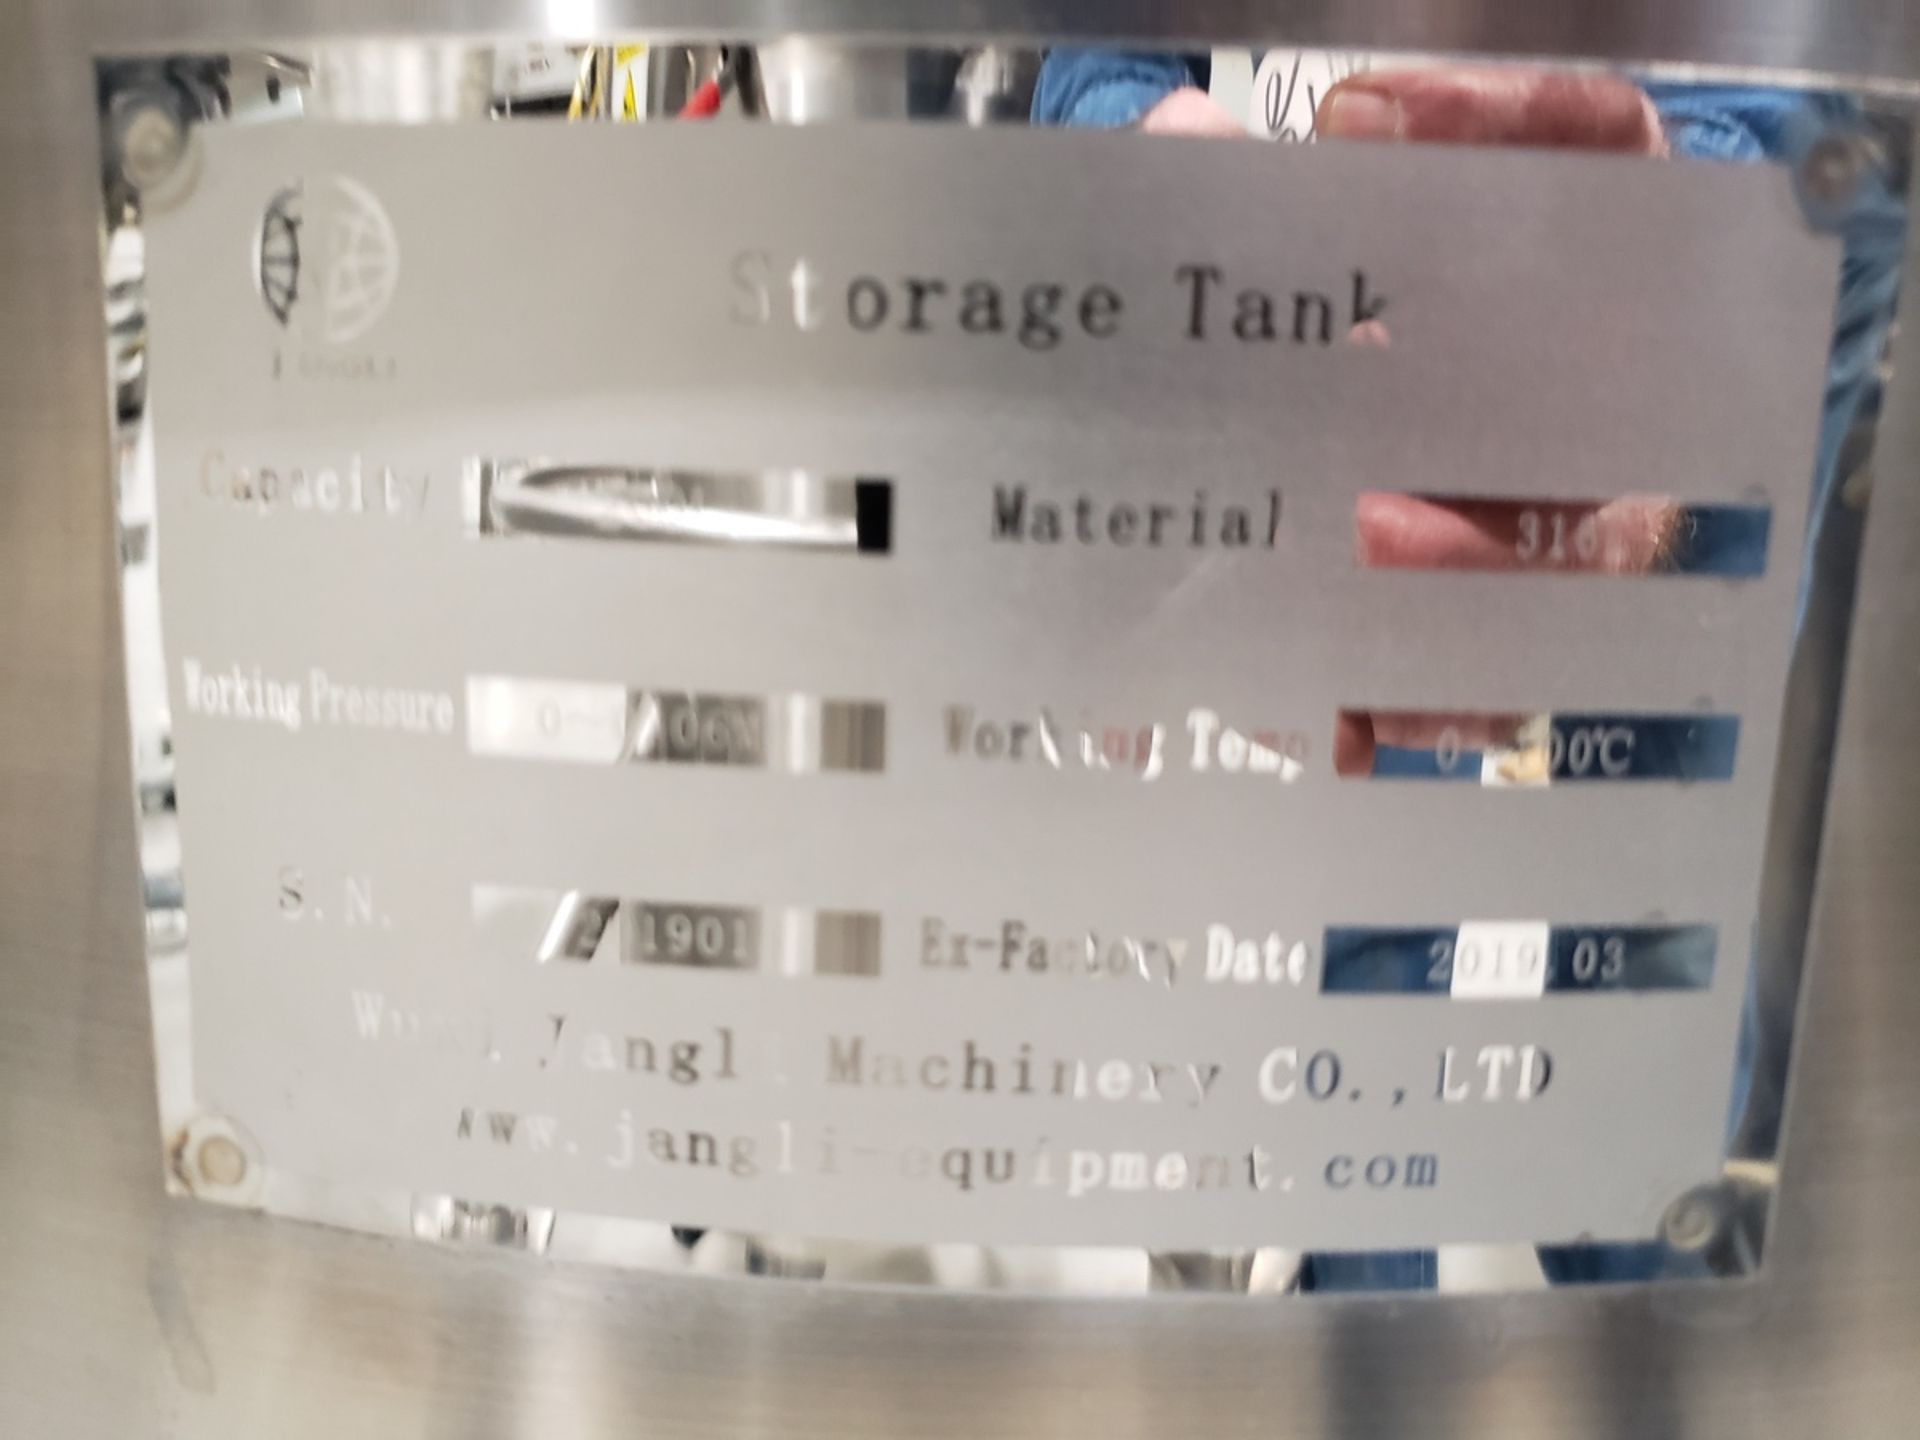 Jangli 200 Liter Gelatin Storage Tank | Rig Fee $100 - Image 2 of 2